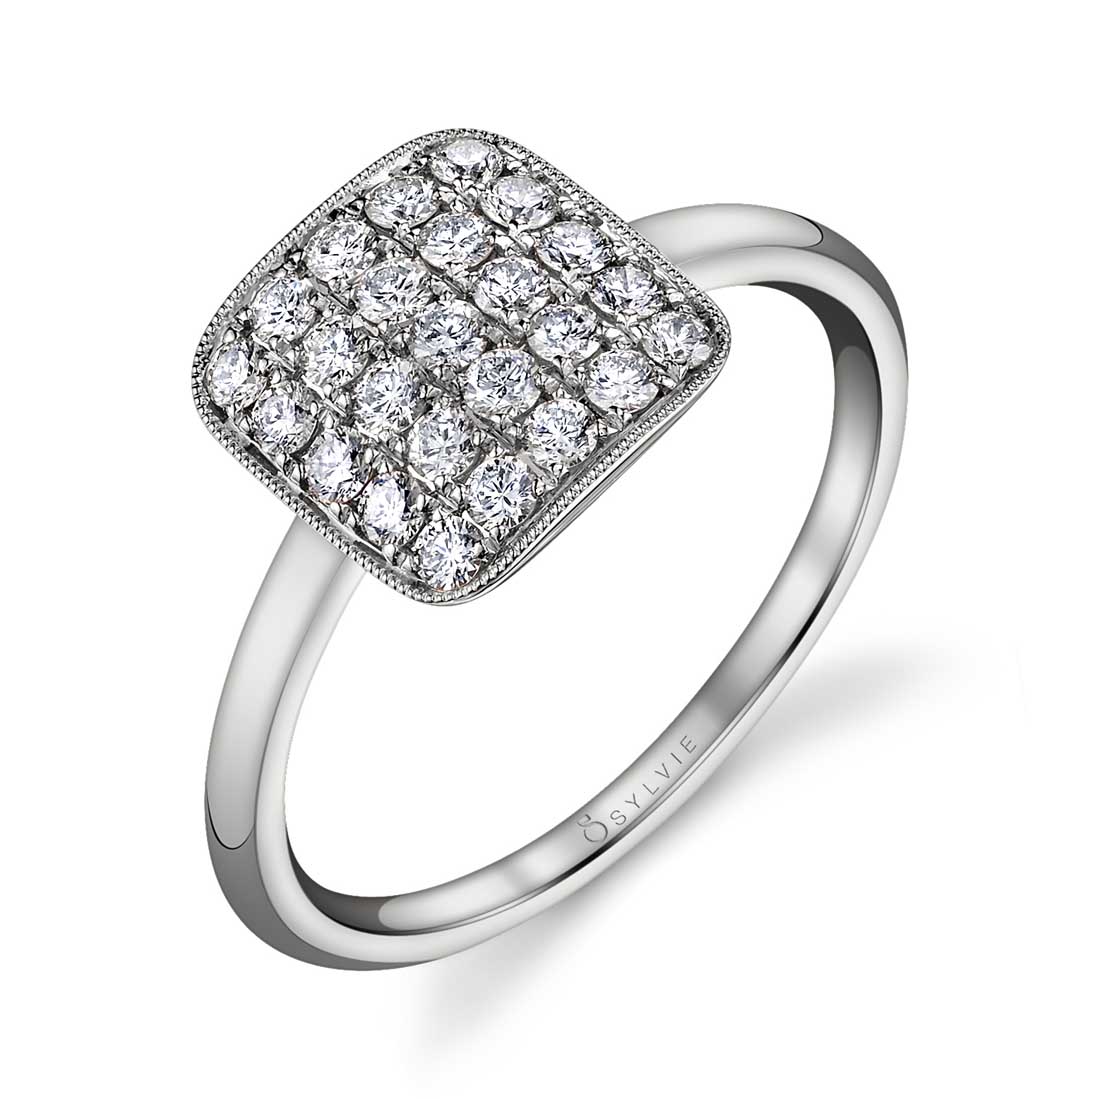 Square Pave Diamond Ring